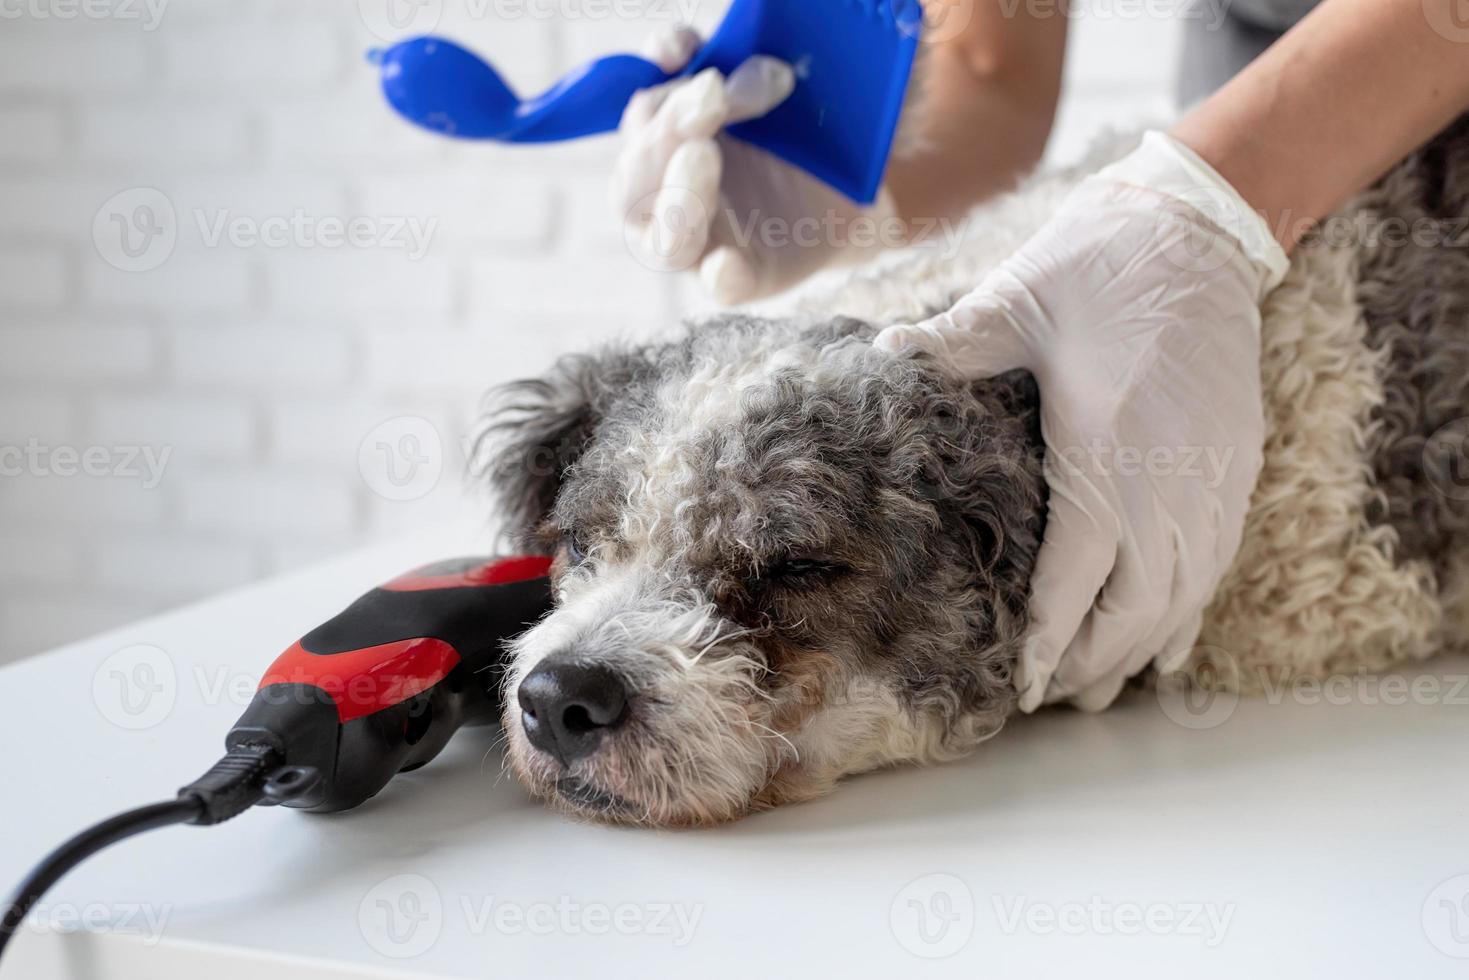 cachorro bichon frise cansado sendo tratado pela mulher com as mãos nas luvas em casa foto